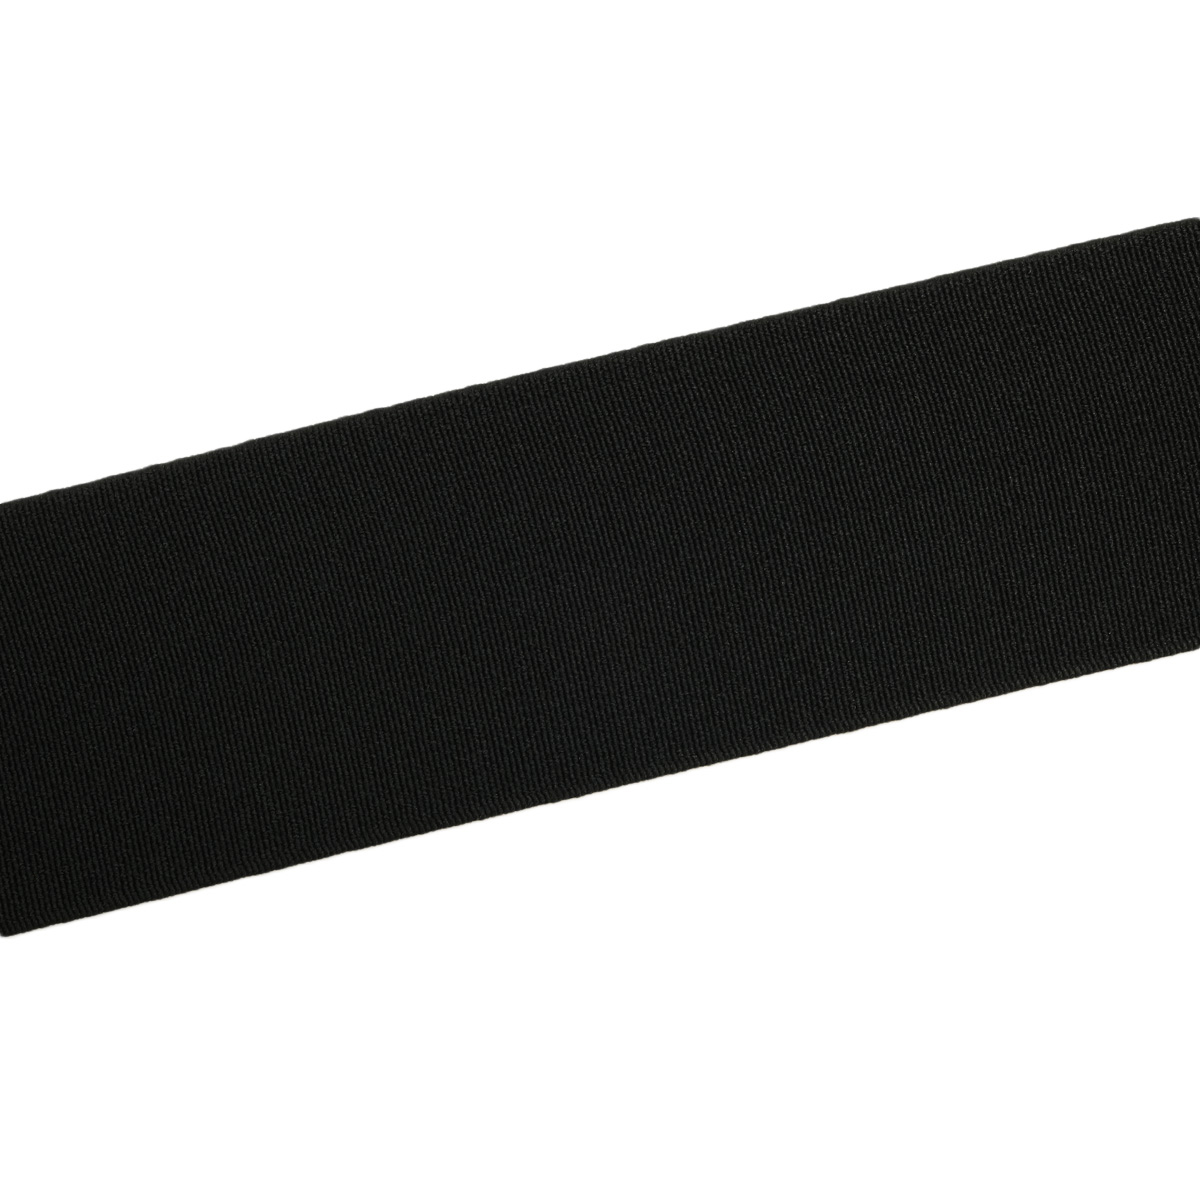 Лента Айрис резинка тканая эластичная башмачная для шитья челси чешек слипонов 50 мм 20 м черная - фото 2